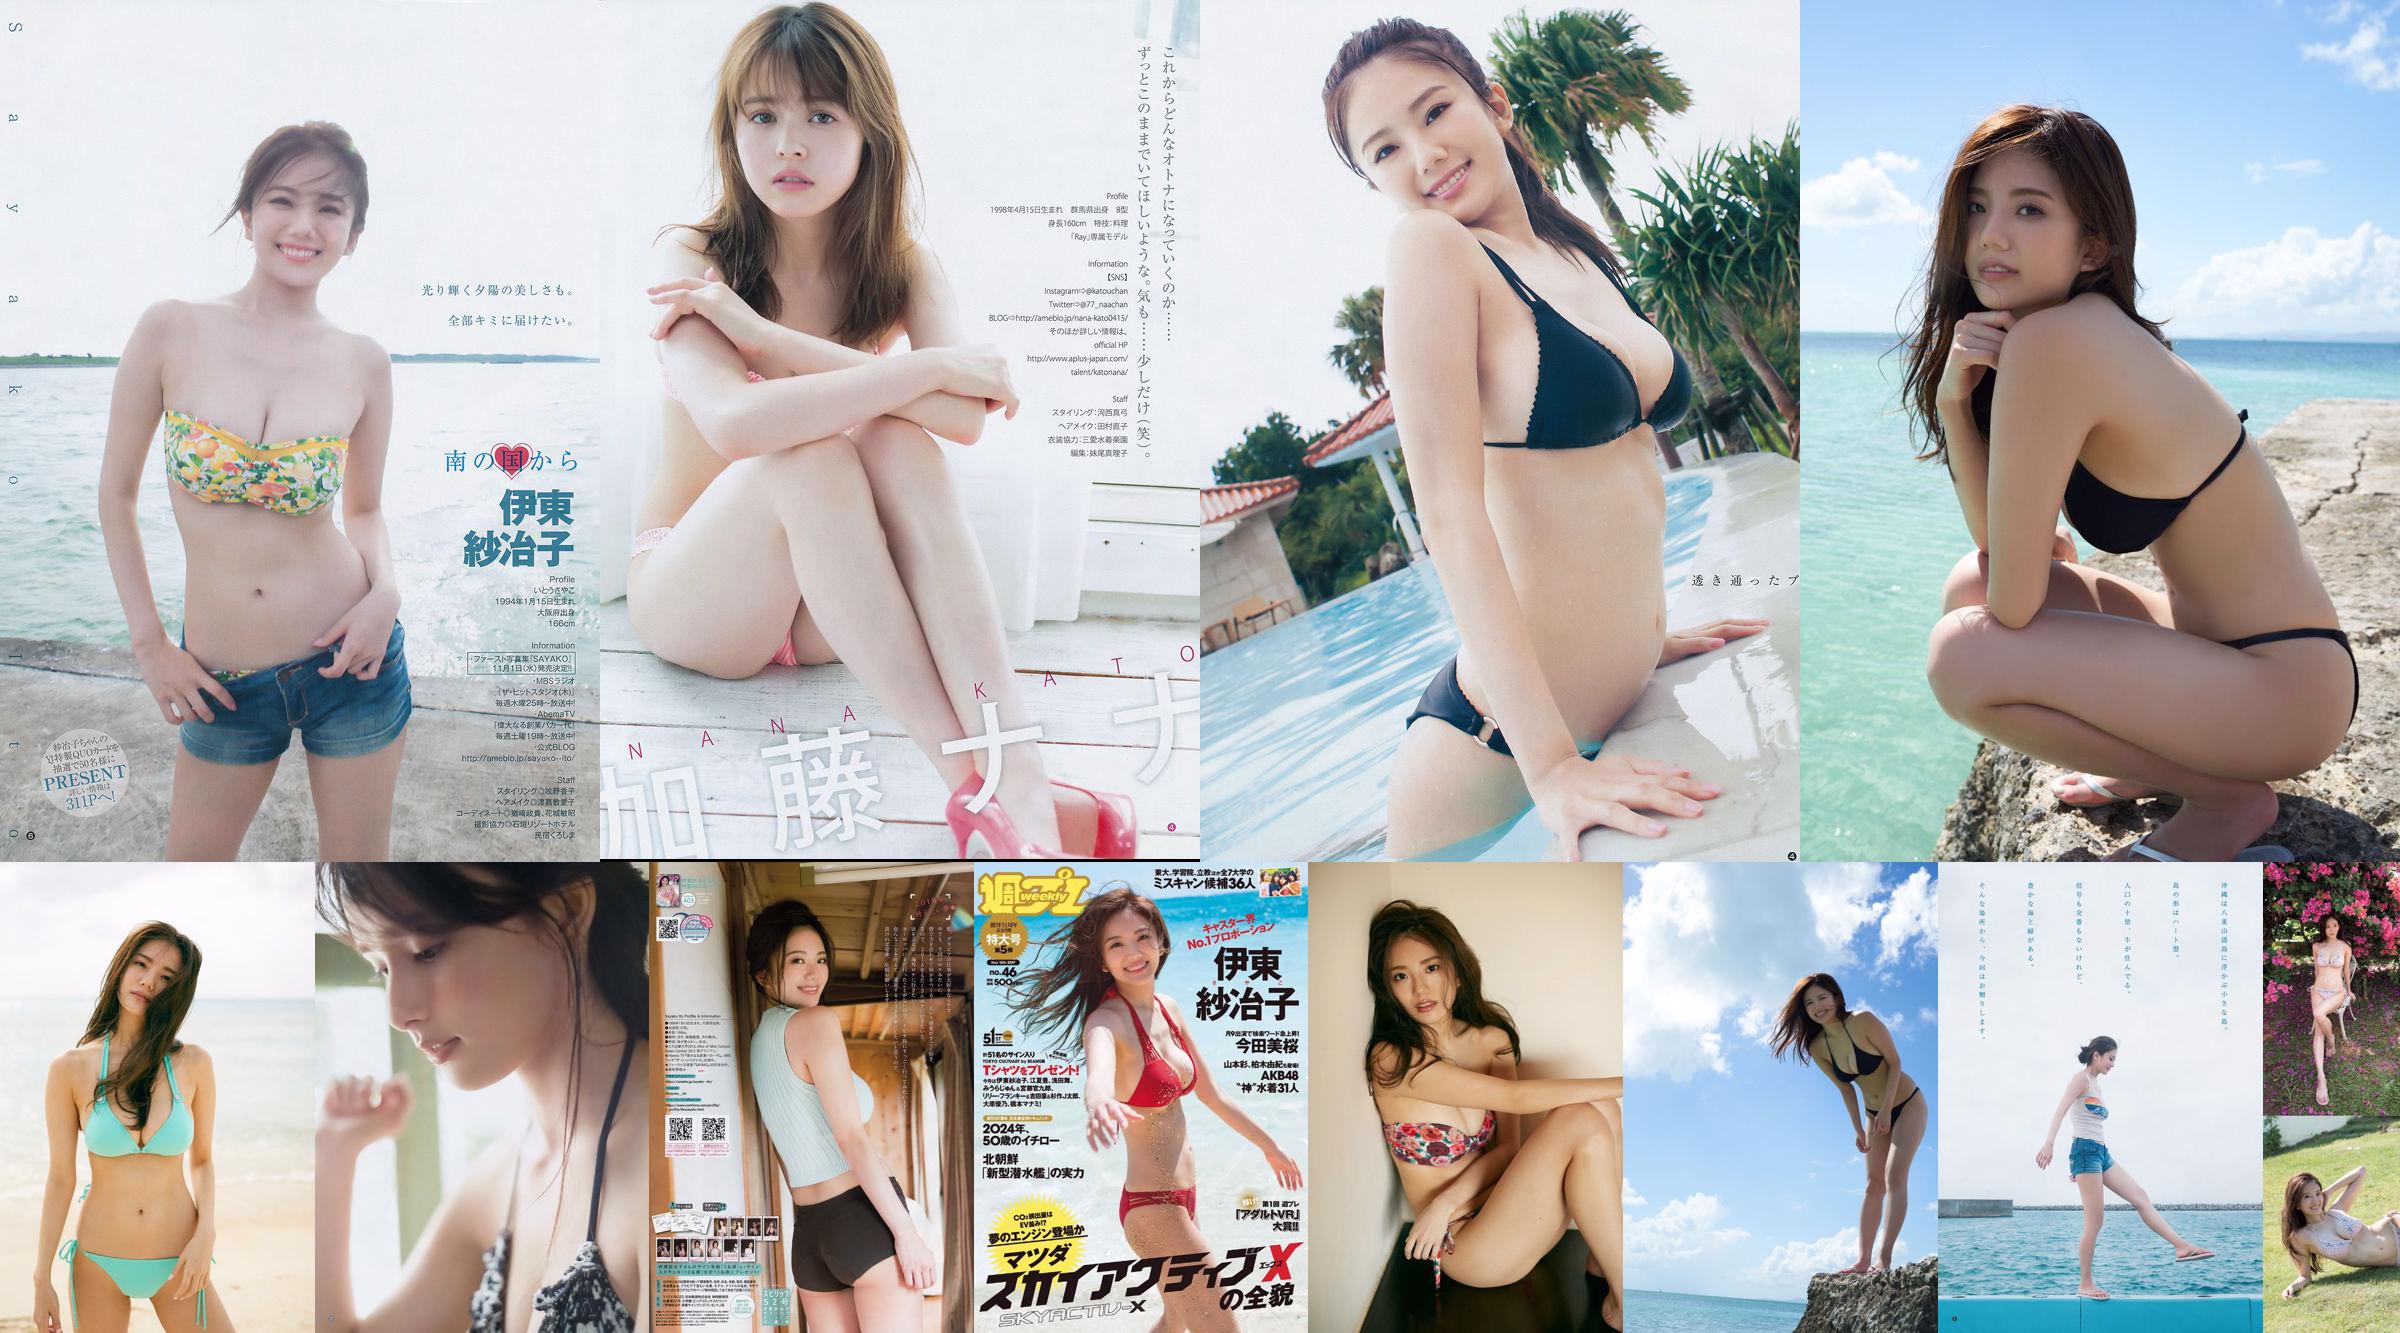 Ito Sayeko, Mima Reiko, Sugimoto Yumi, Sato Reina, Yoshiki り さ Toyama Akiko, Naninao [Weekly Playboy] Tạp chí ảnh số 36 năm 2016 No.f48b02 Trang 13